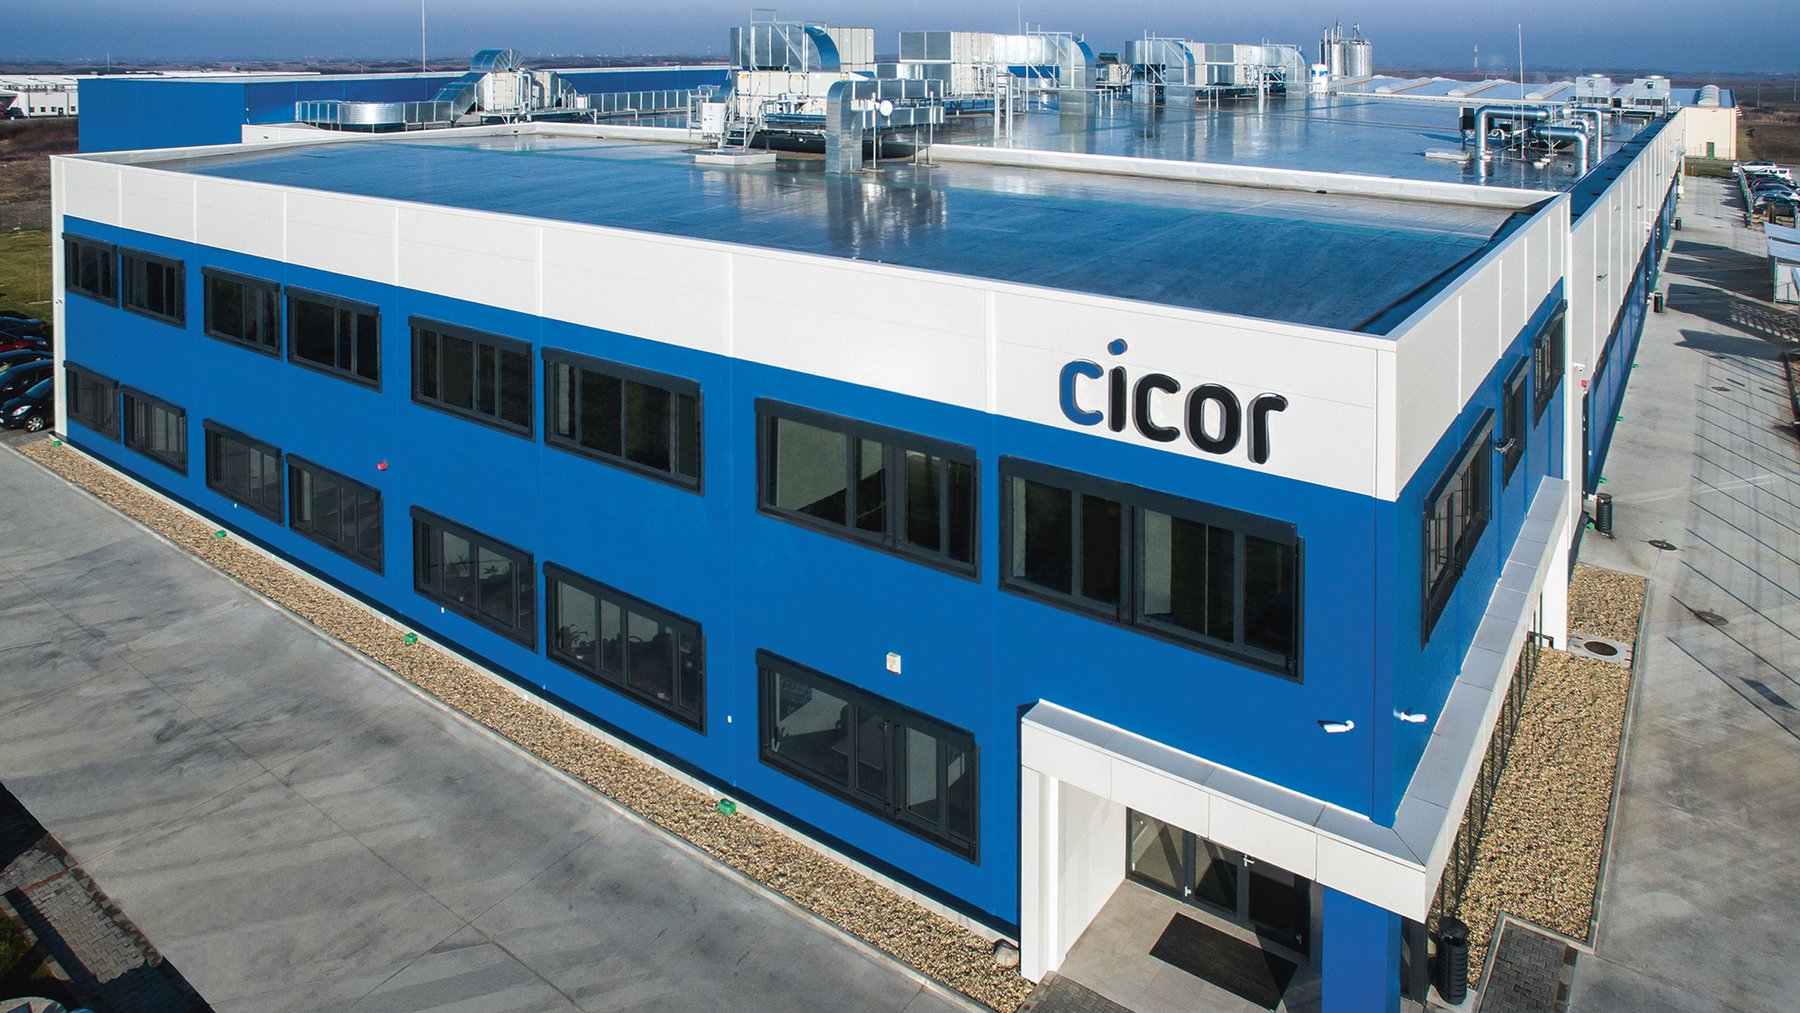 Cicor production site in Arad, Romania